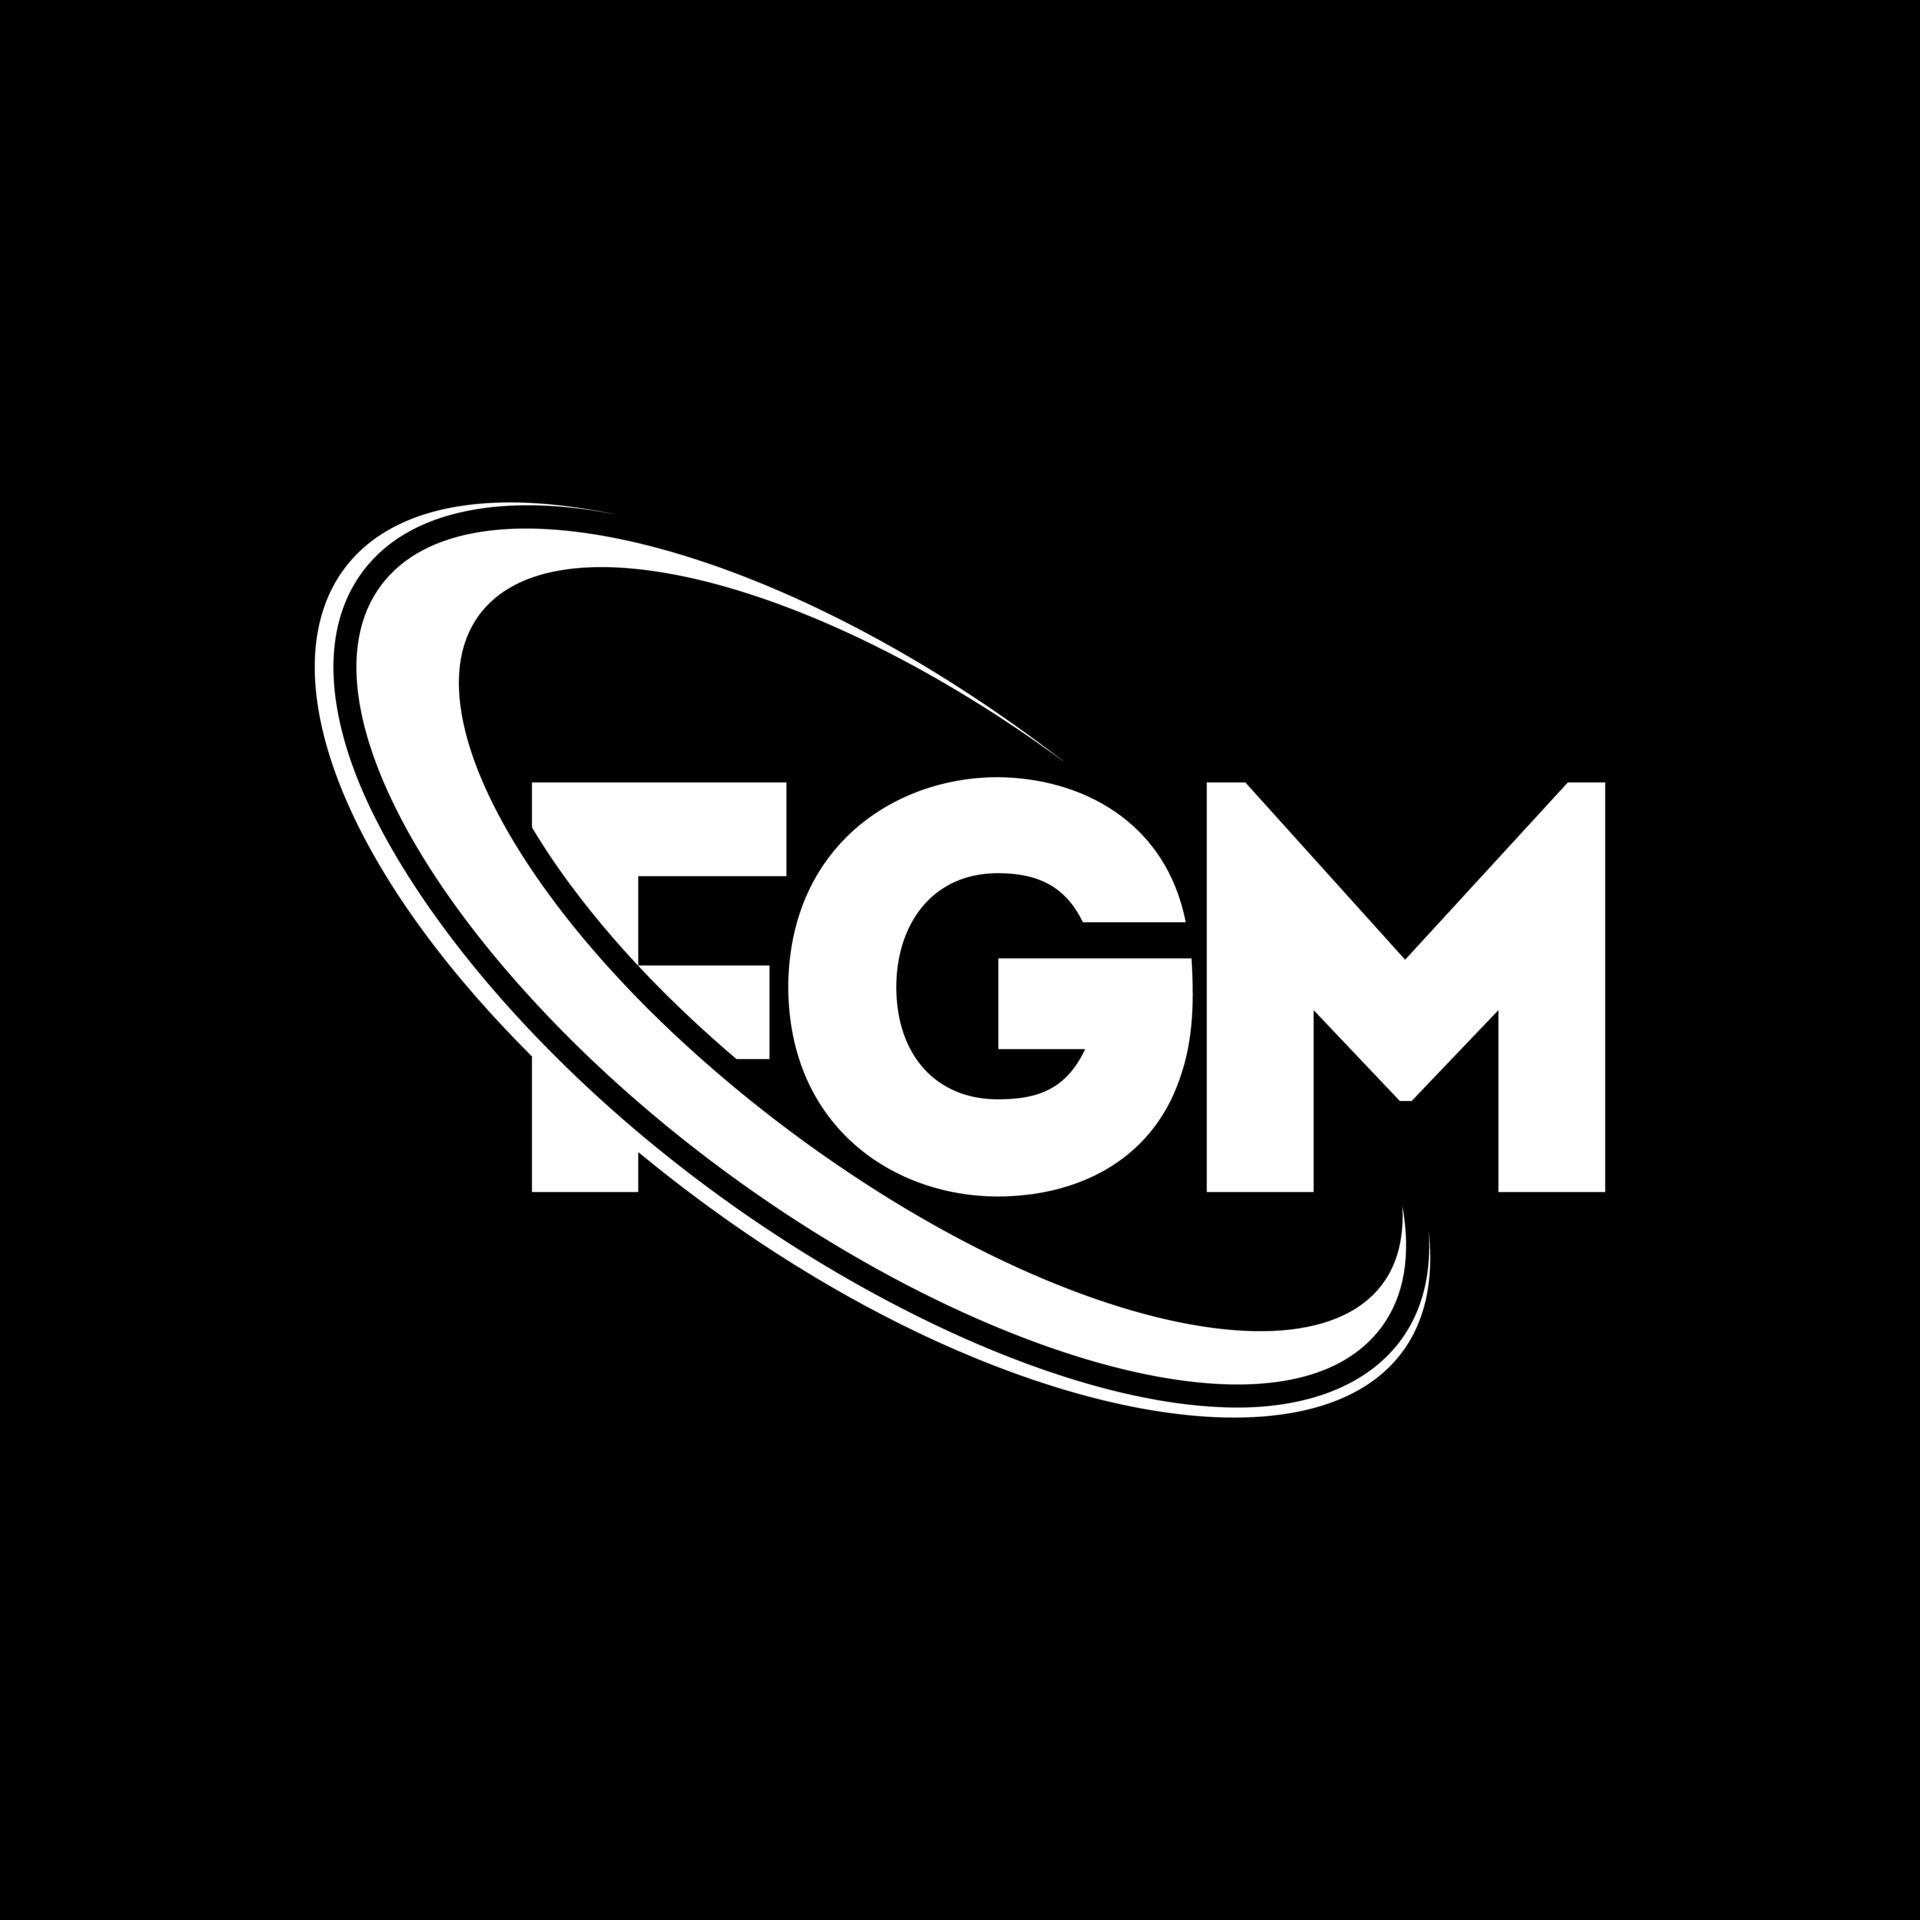 9131159-fgm-logo-fgm-letter-fgm-letter-logo-design-initials-fgm-logo-collegato-con-cerchio-e-monogramma-maiuscolo-logo-fgm-tipografia-per-tecnologia-aziendale-e-reale-marchio-immobiliare-vettoriale